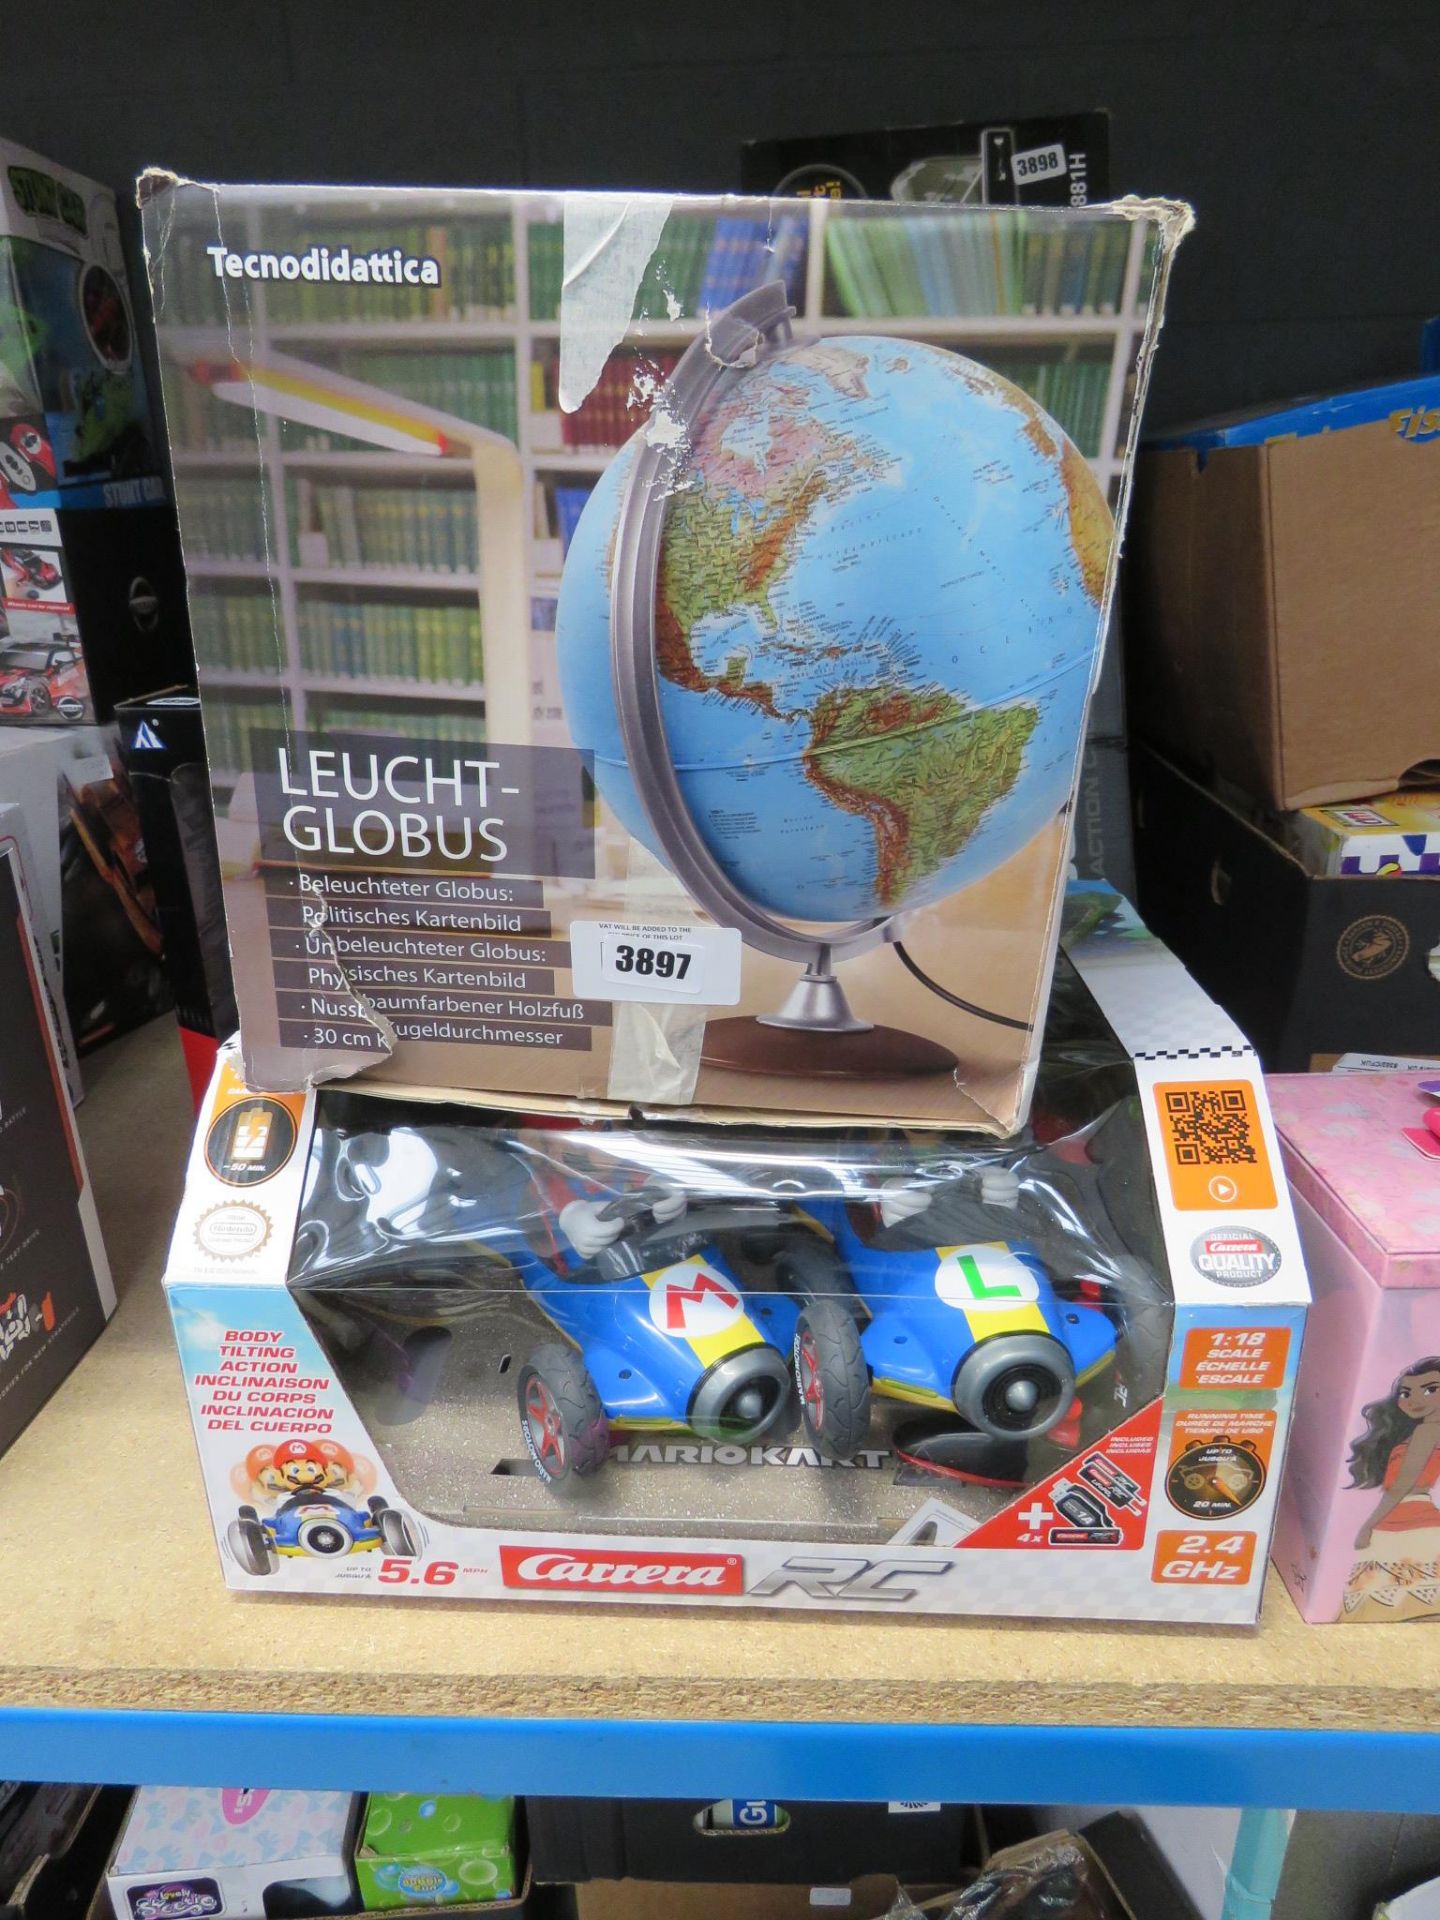 Collection of kids toys incl. illuminated globe, mario kart race game, and Disney princess makeup